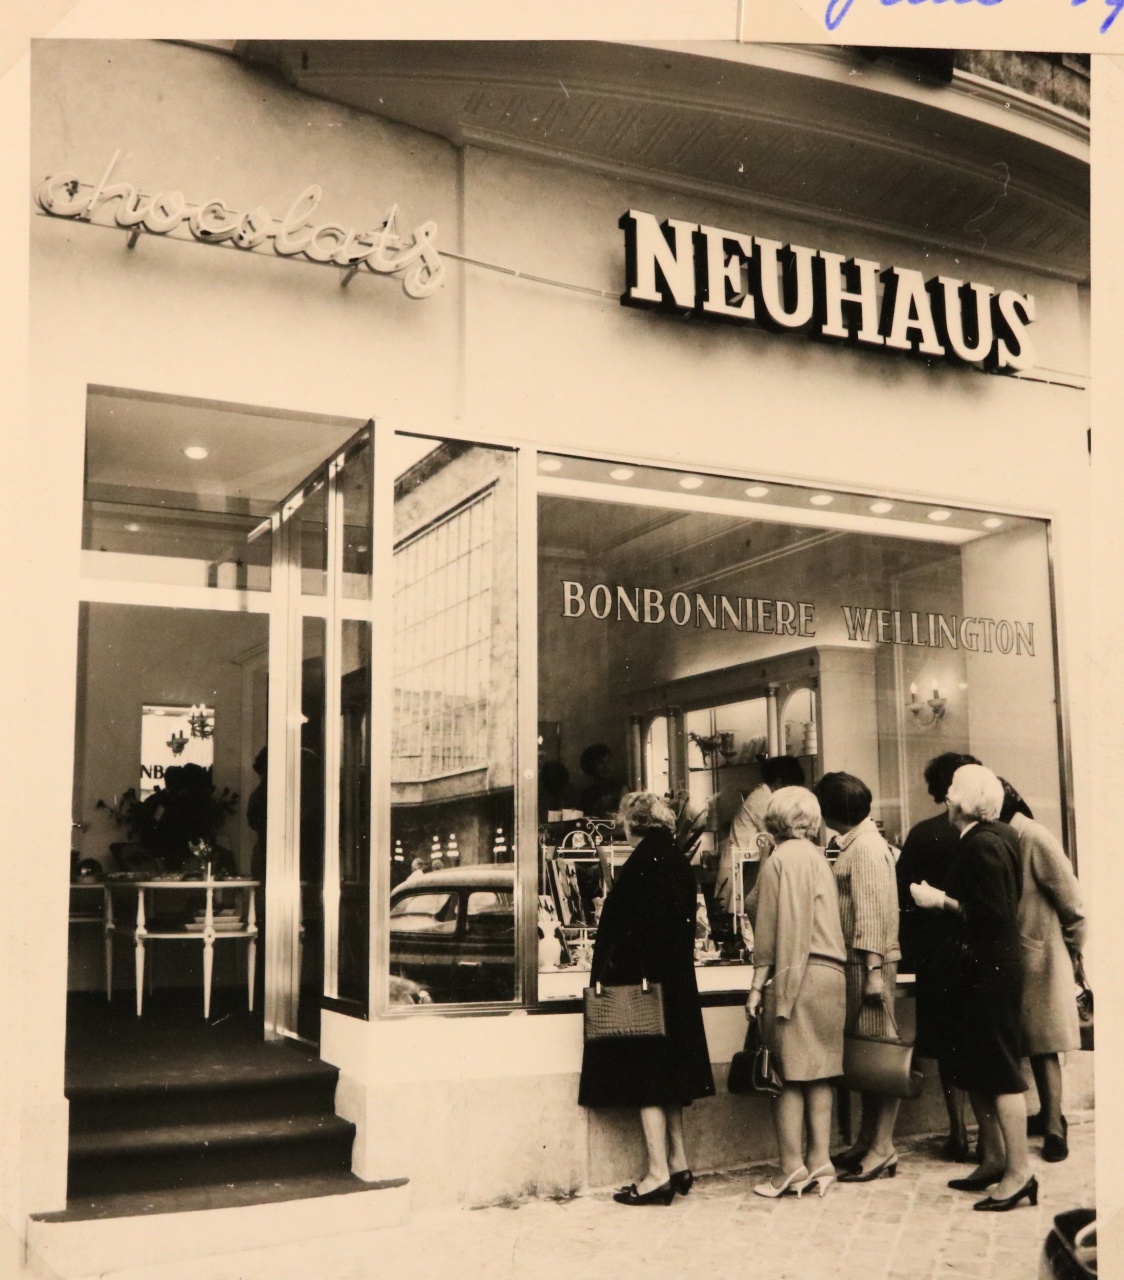 Historische zwart-wit foto van de buitenkant van de Neuhaus chocolaterie, met klanten die voor de etalage staan